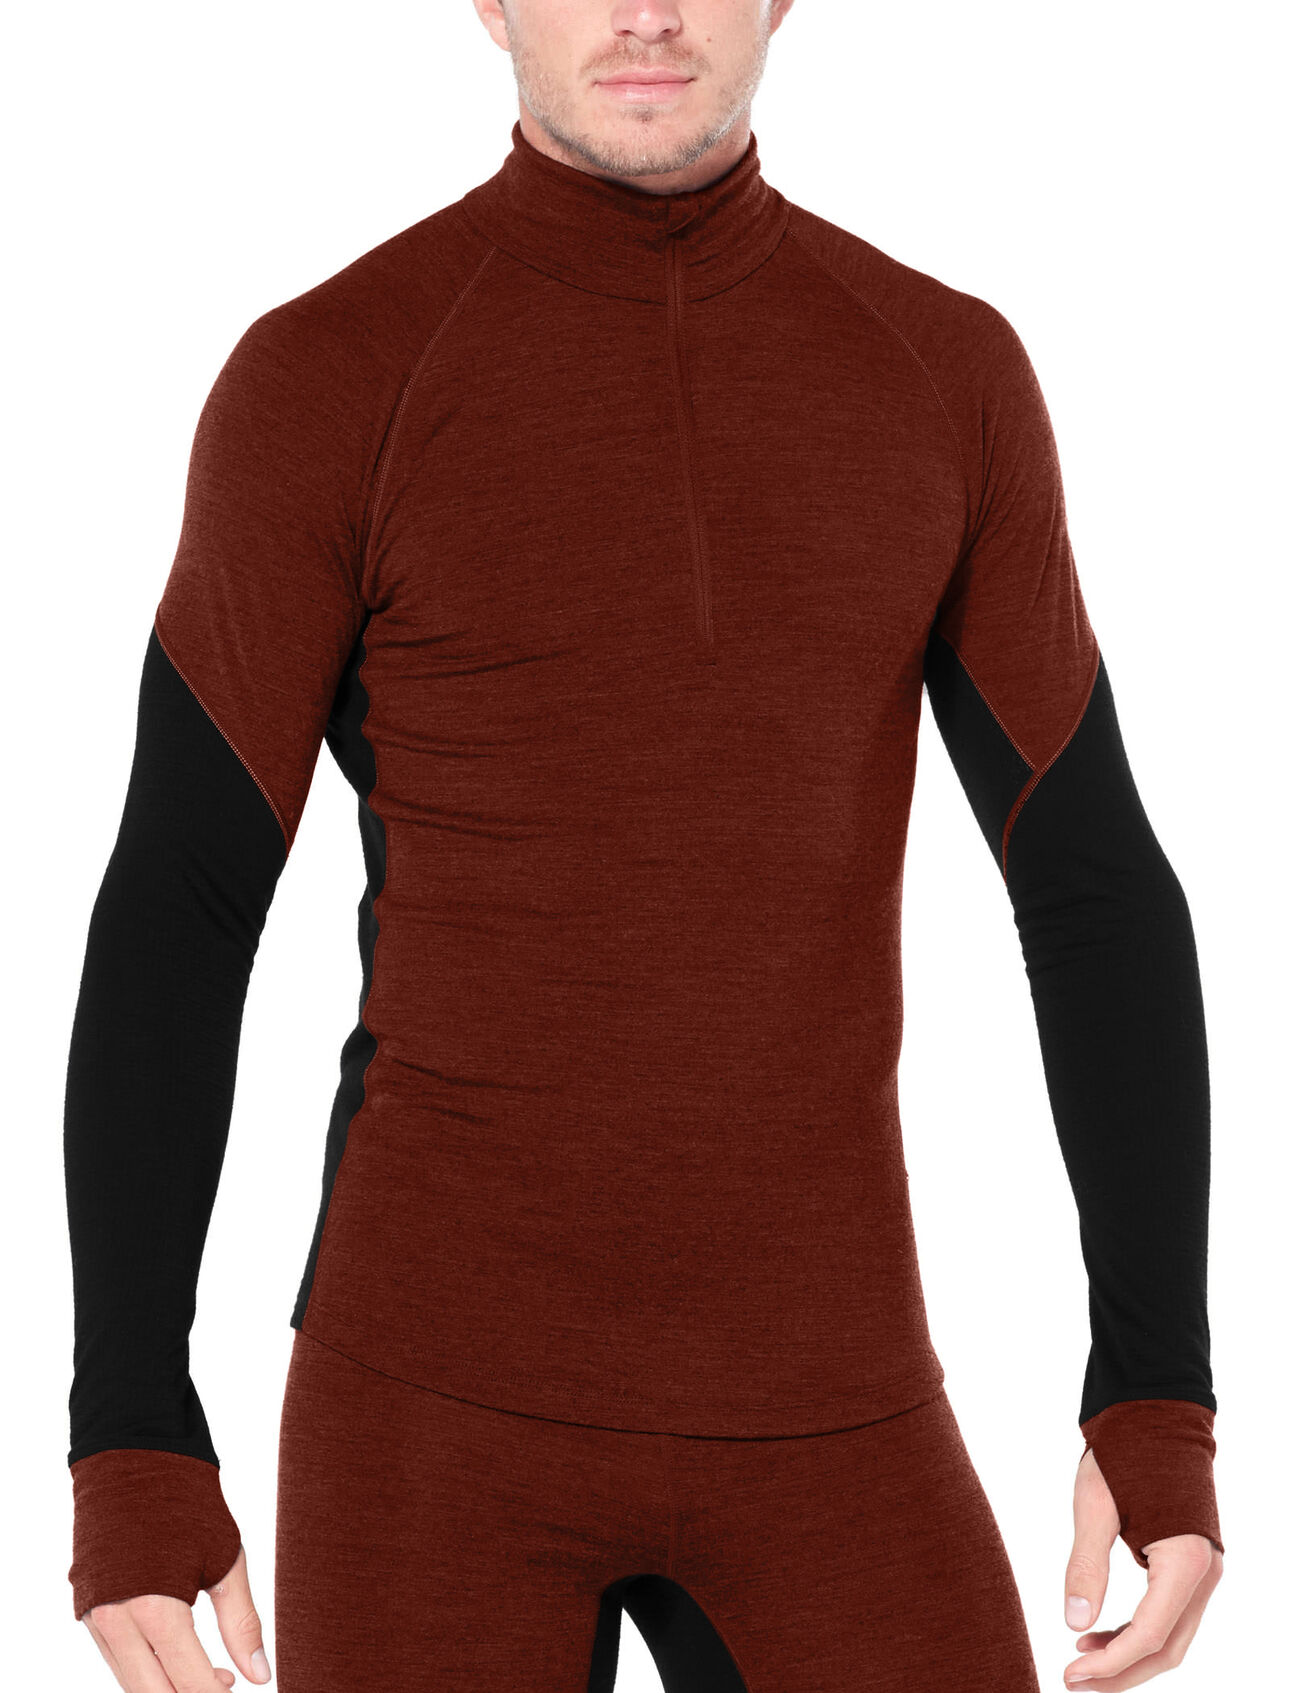 Icebreaker Bodyfit 260 Tech Top Long Sleeve Half Zip - Men's   RacingThePlanet, The Outdoor Store – RacingThePlanet Limited